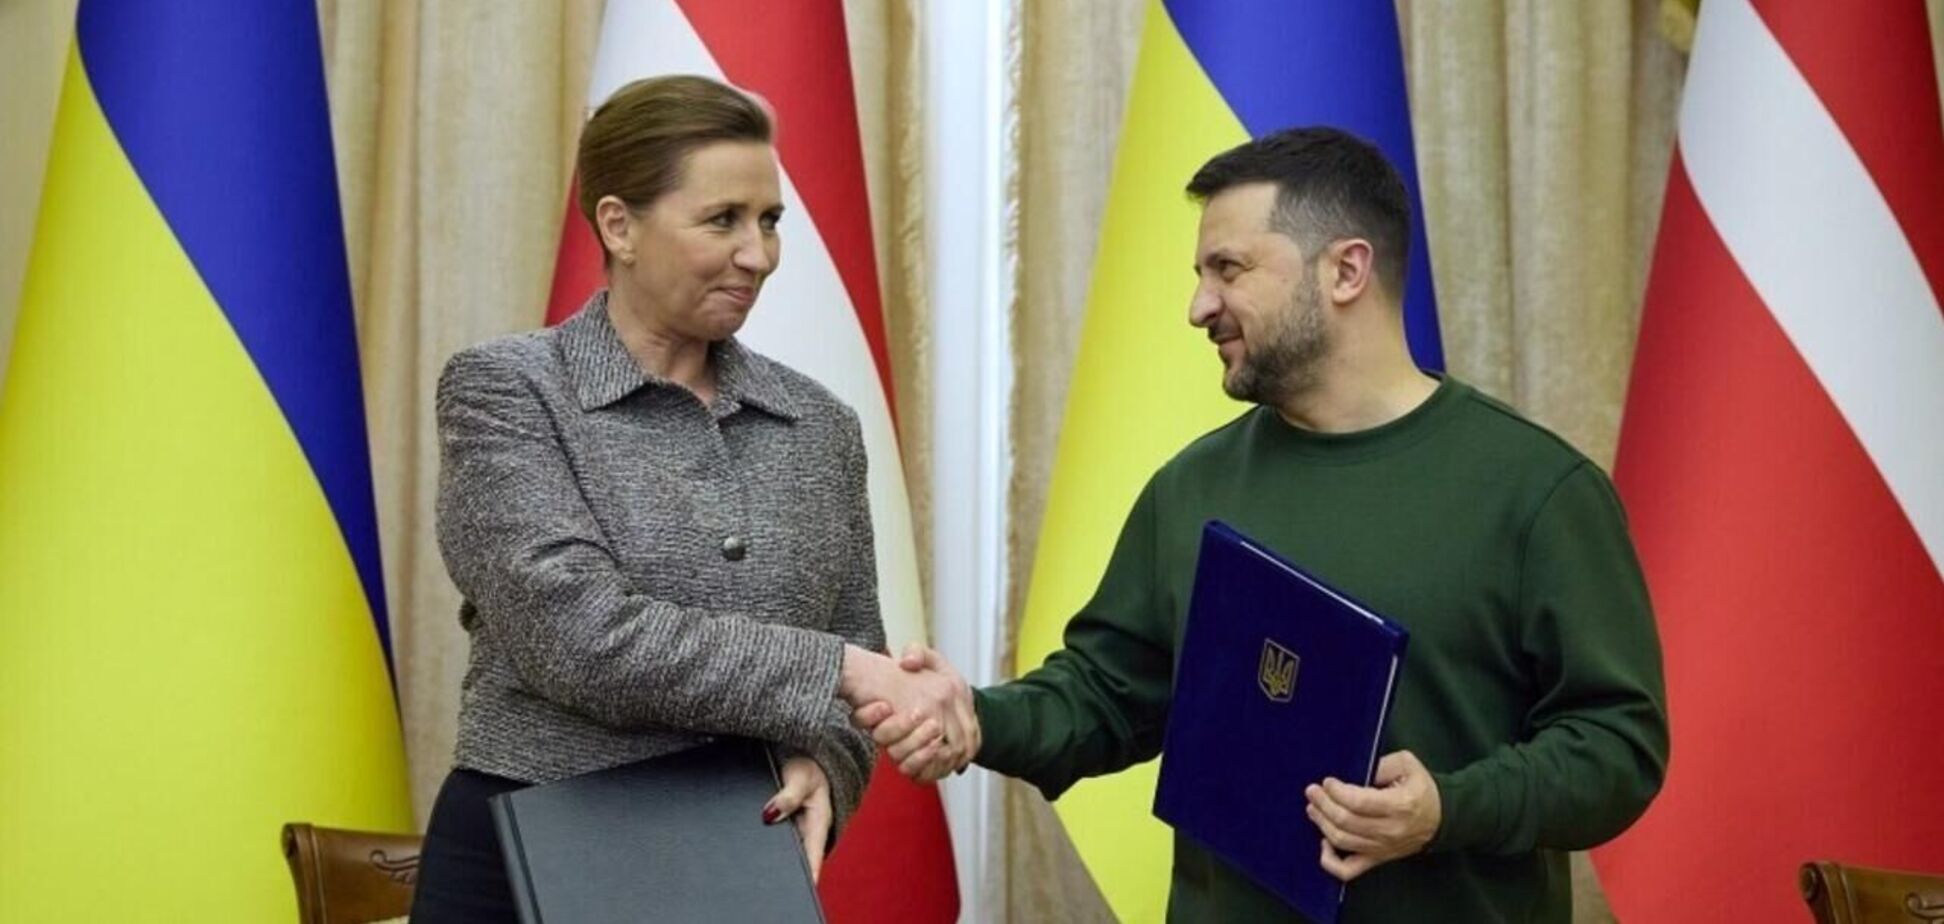 Дания планирует увеличить помощь Украине на $630 млн: на что пойдут средства